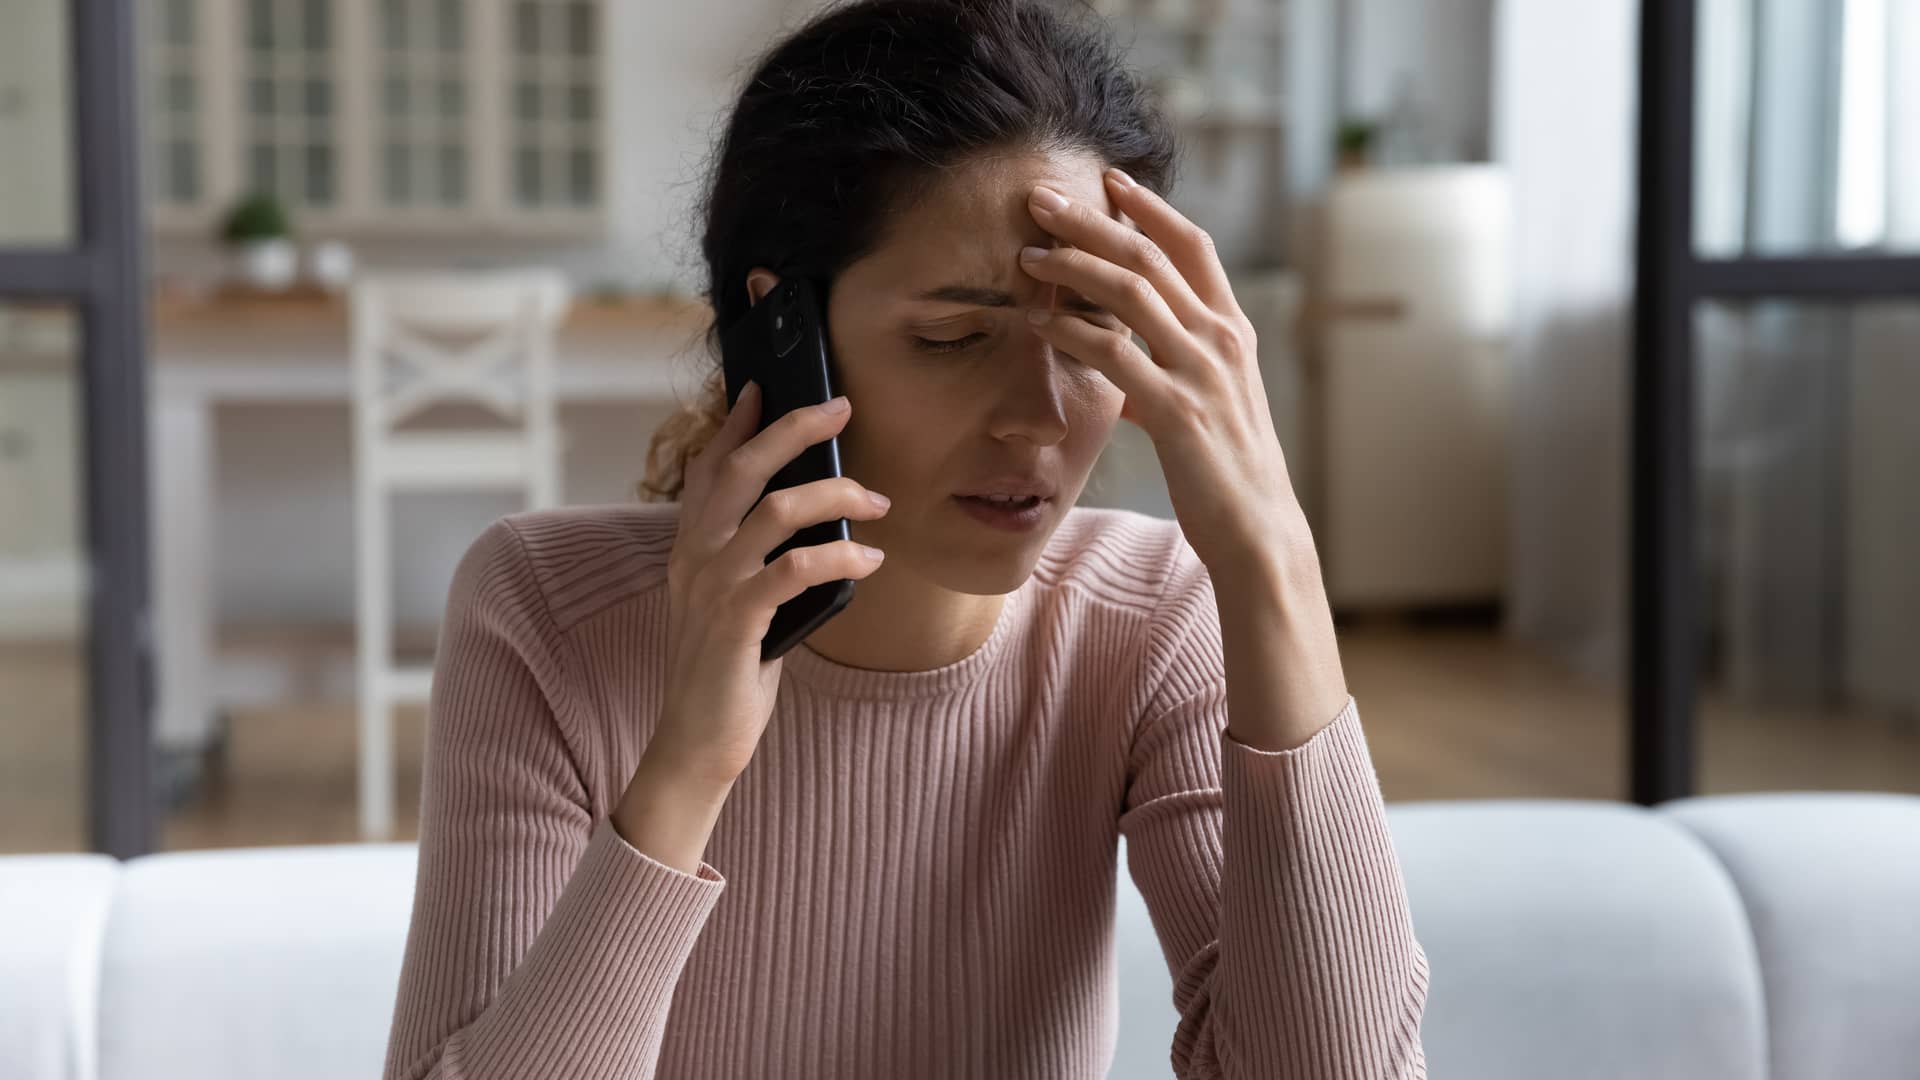 una mujer disgustada poniendo por telefono una reclamacion a la aseguradora axa